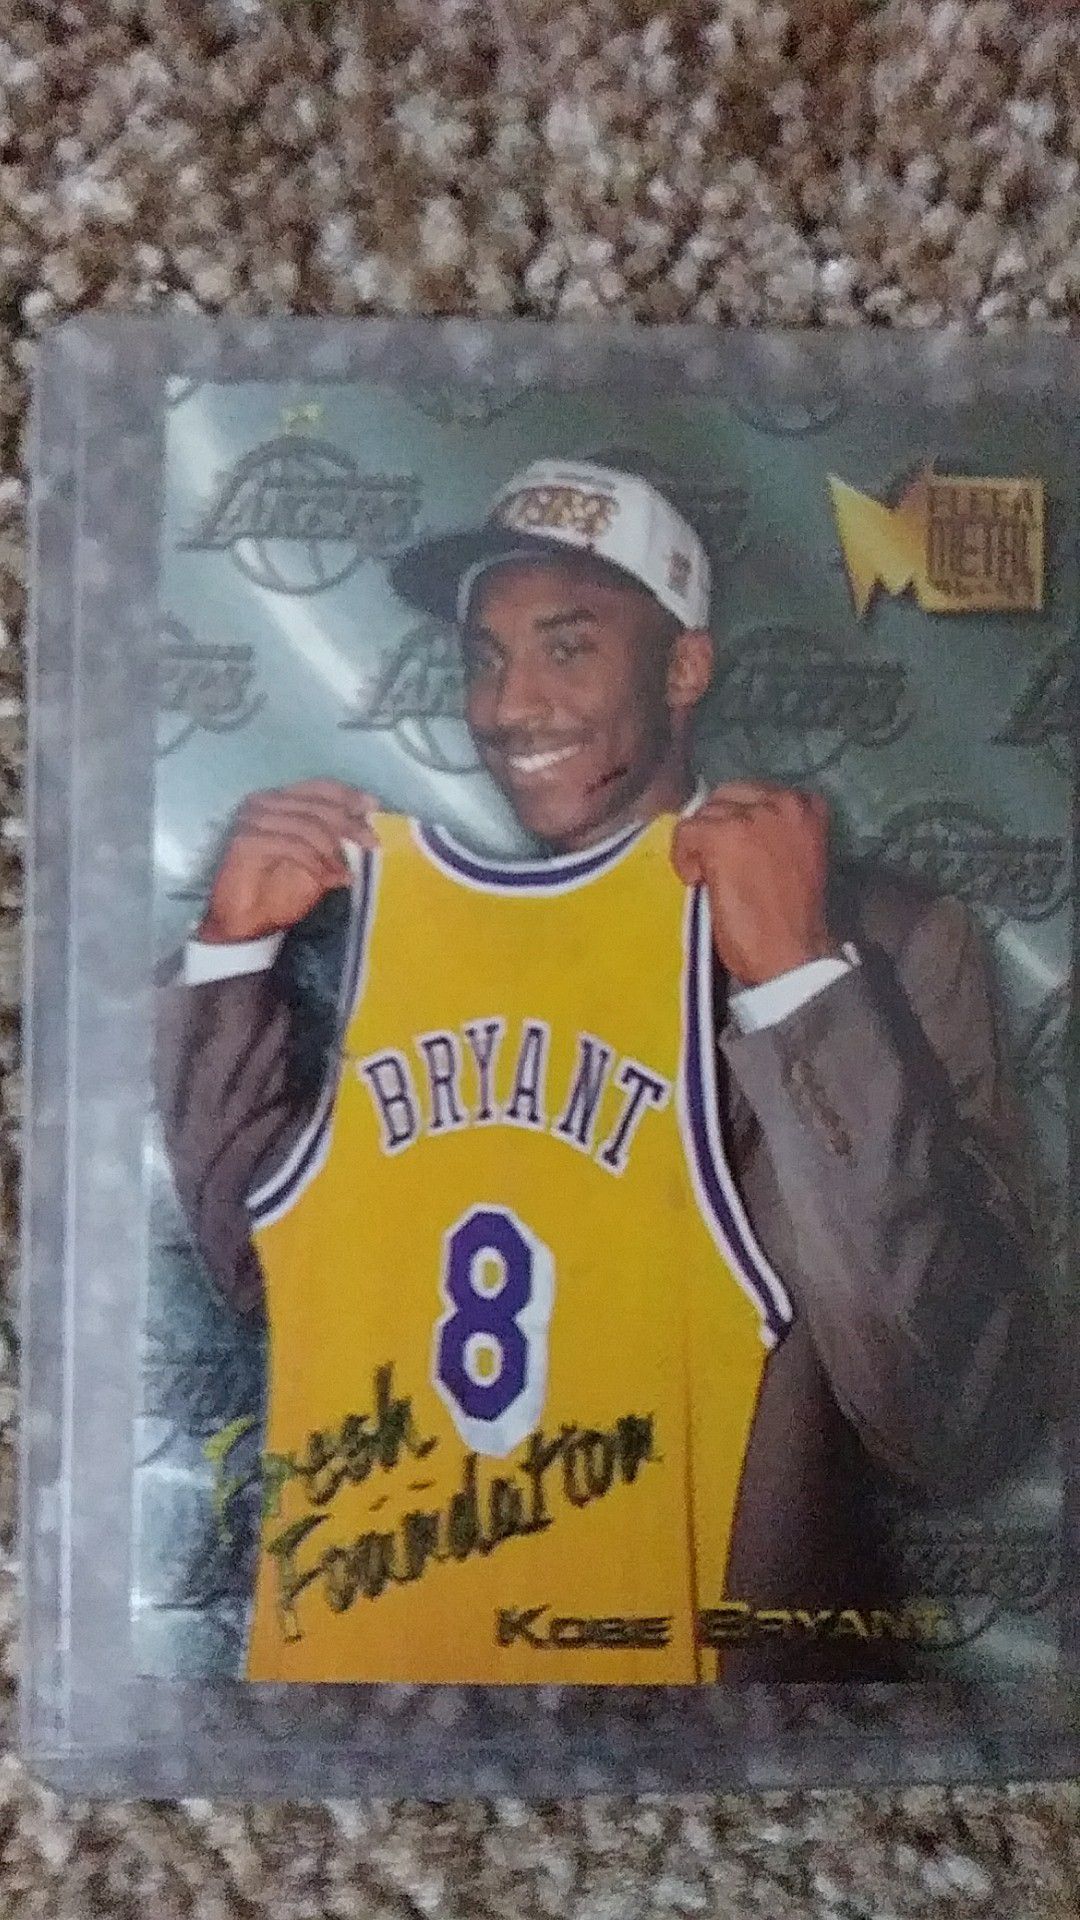 Kobe Bryant Card